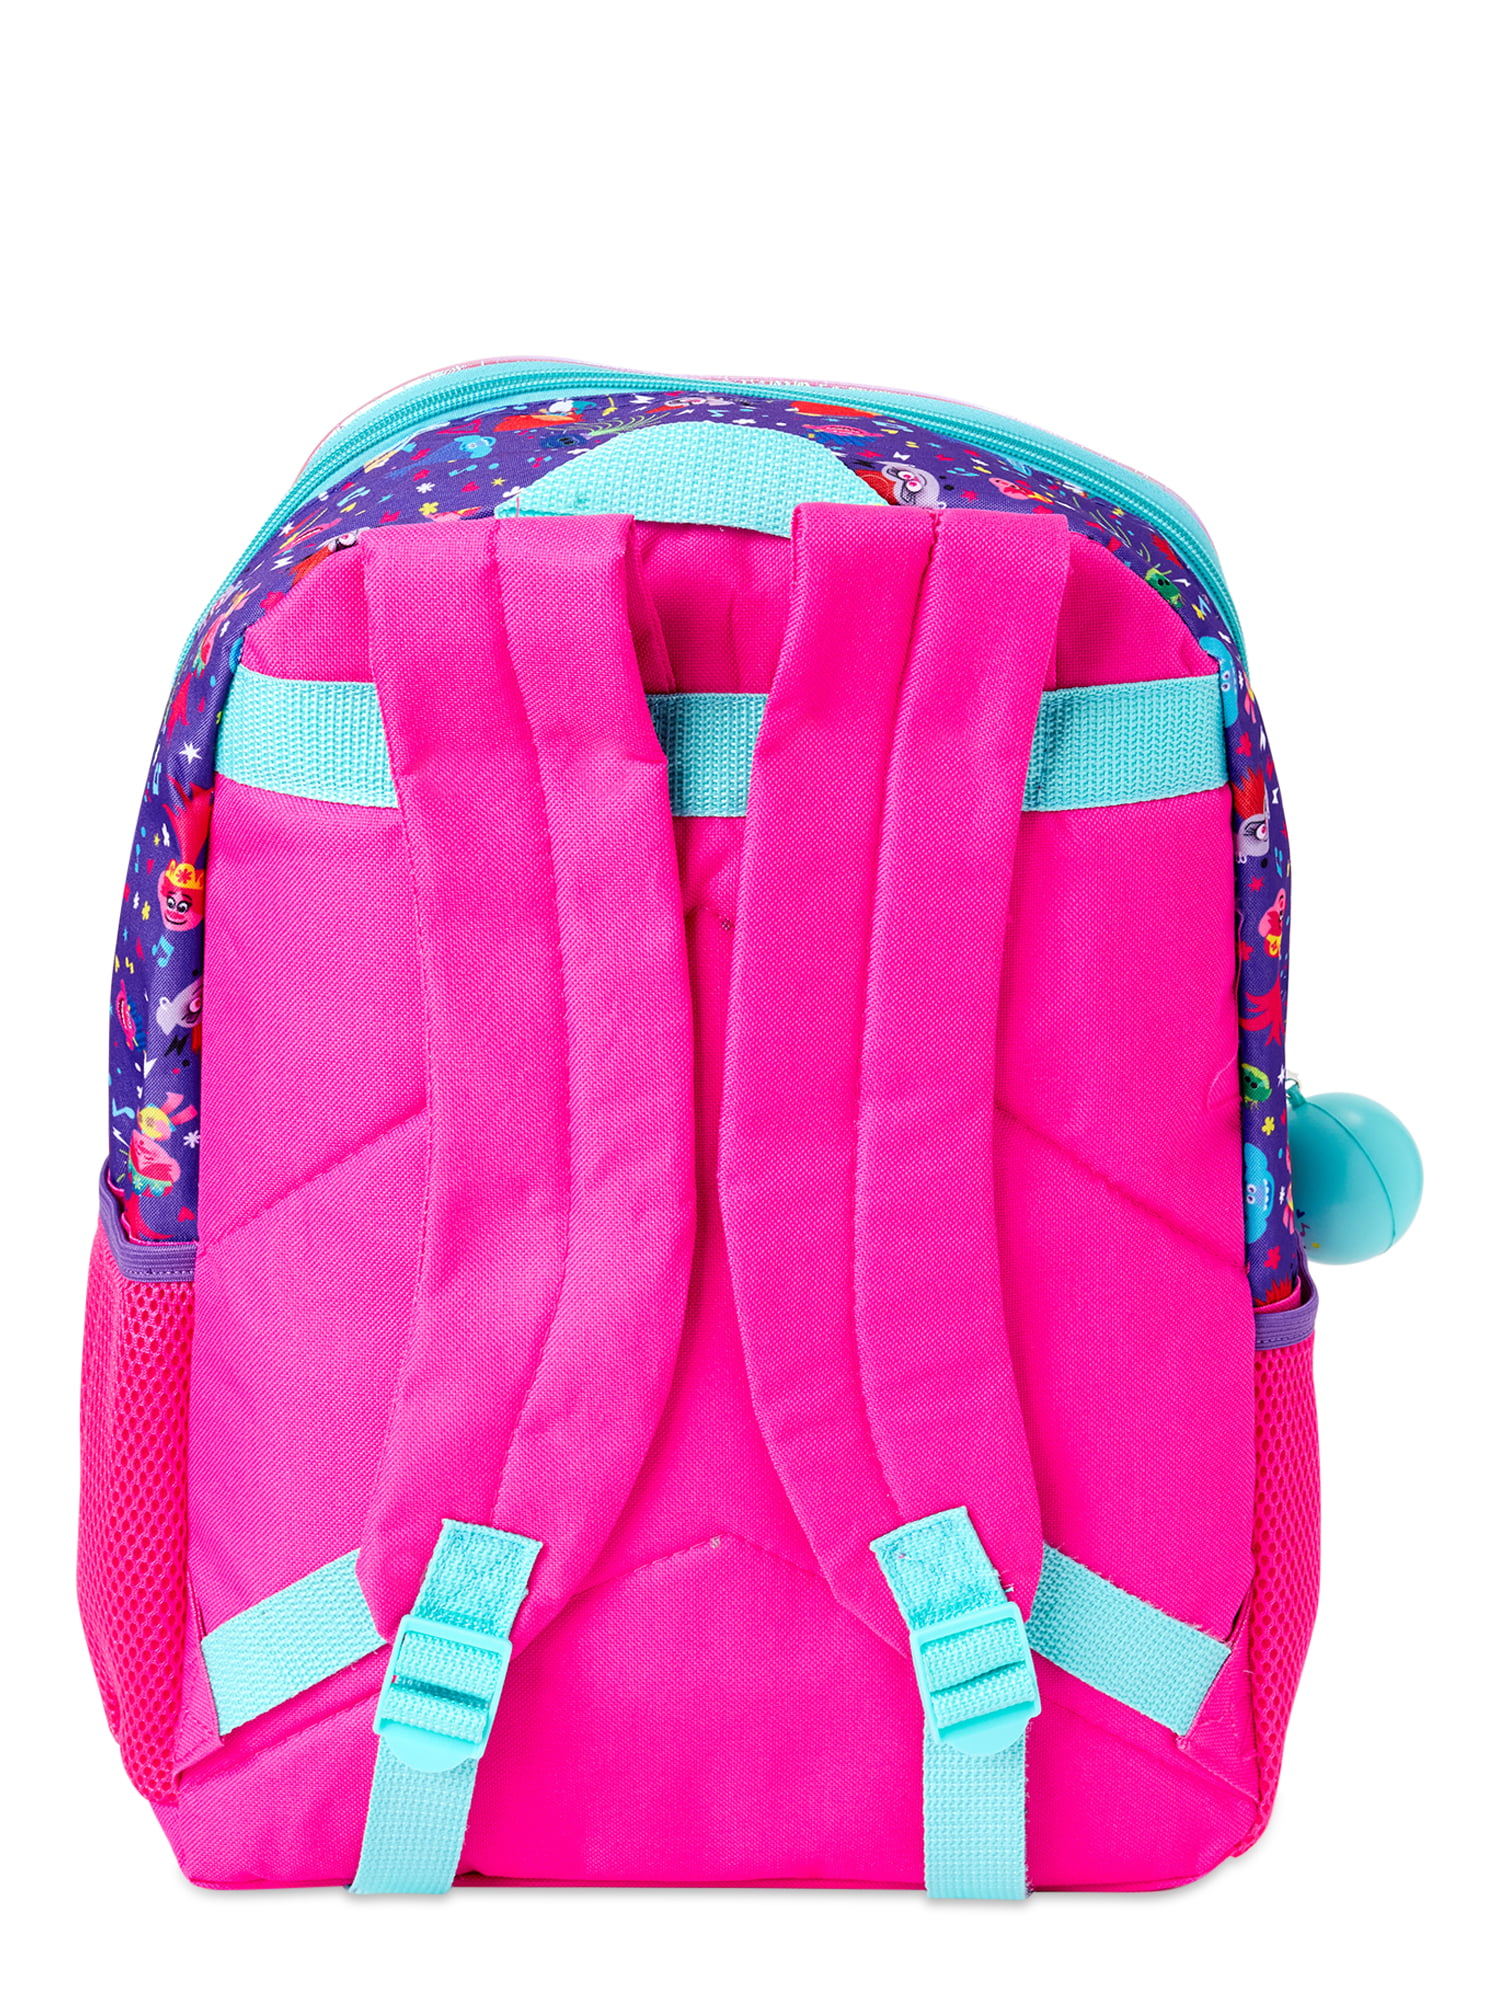 Dreamworks Trolls 5-piece Backpack & Lunch Bag Set